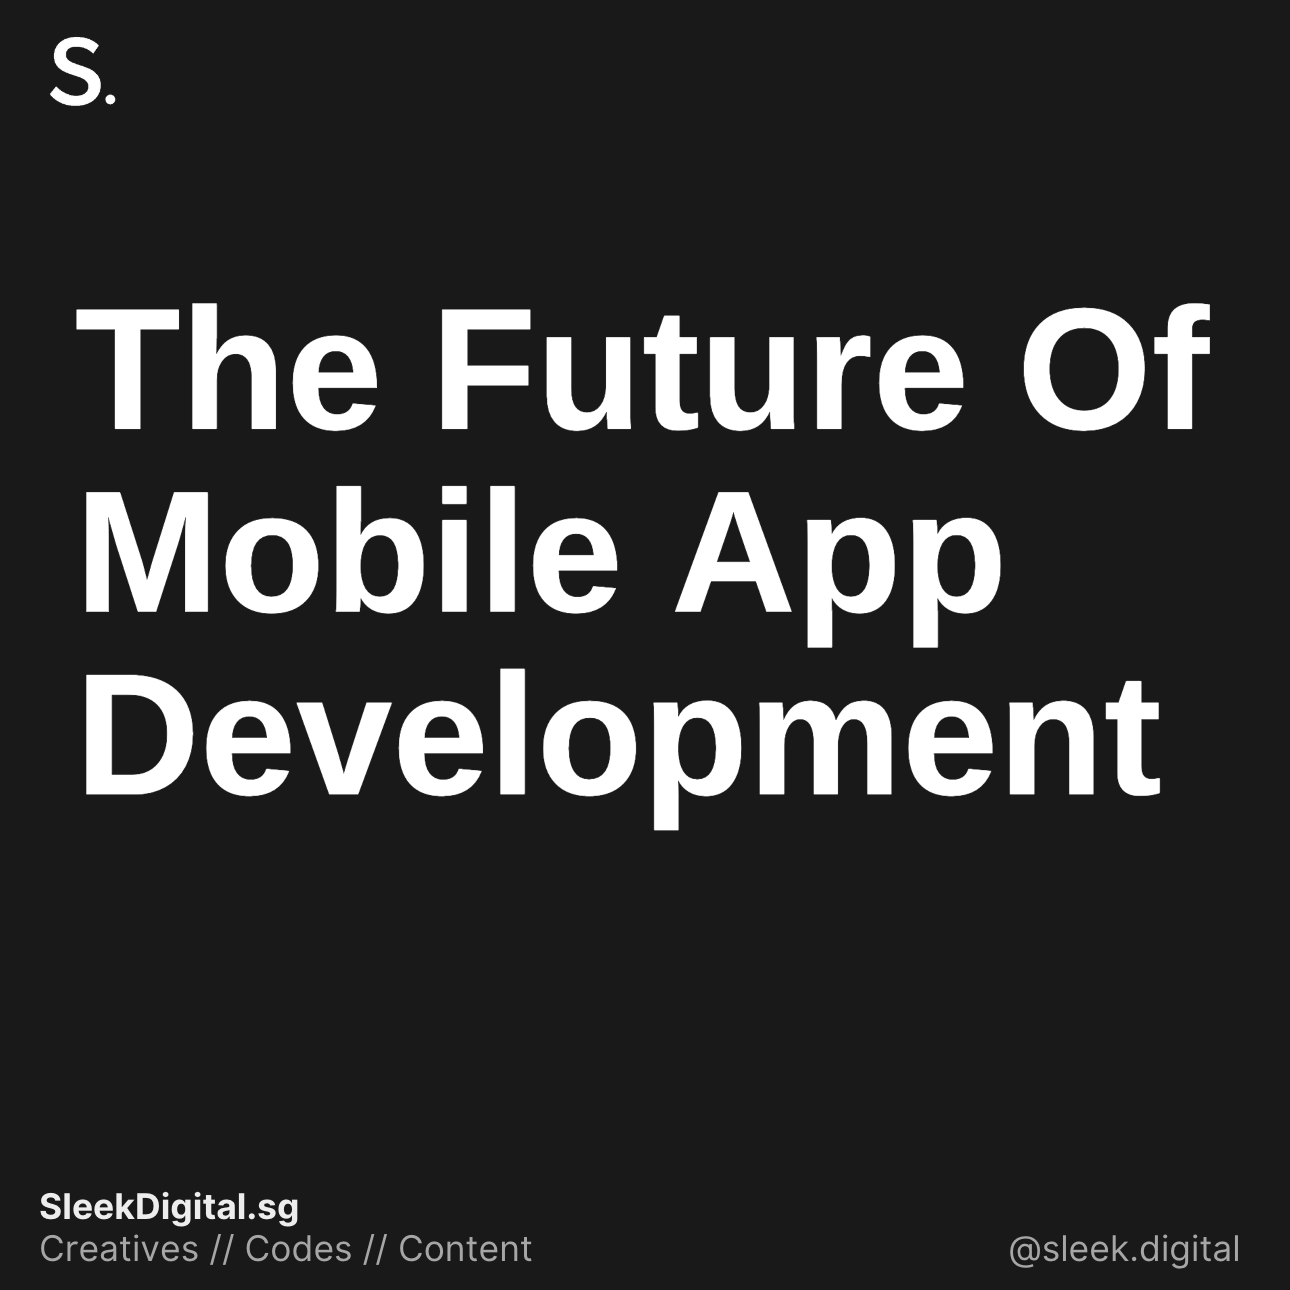 The Future Of Mobile App Development